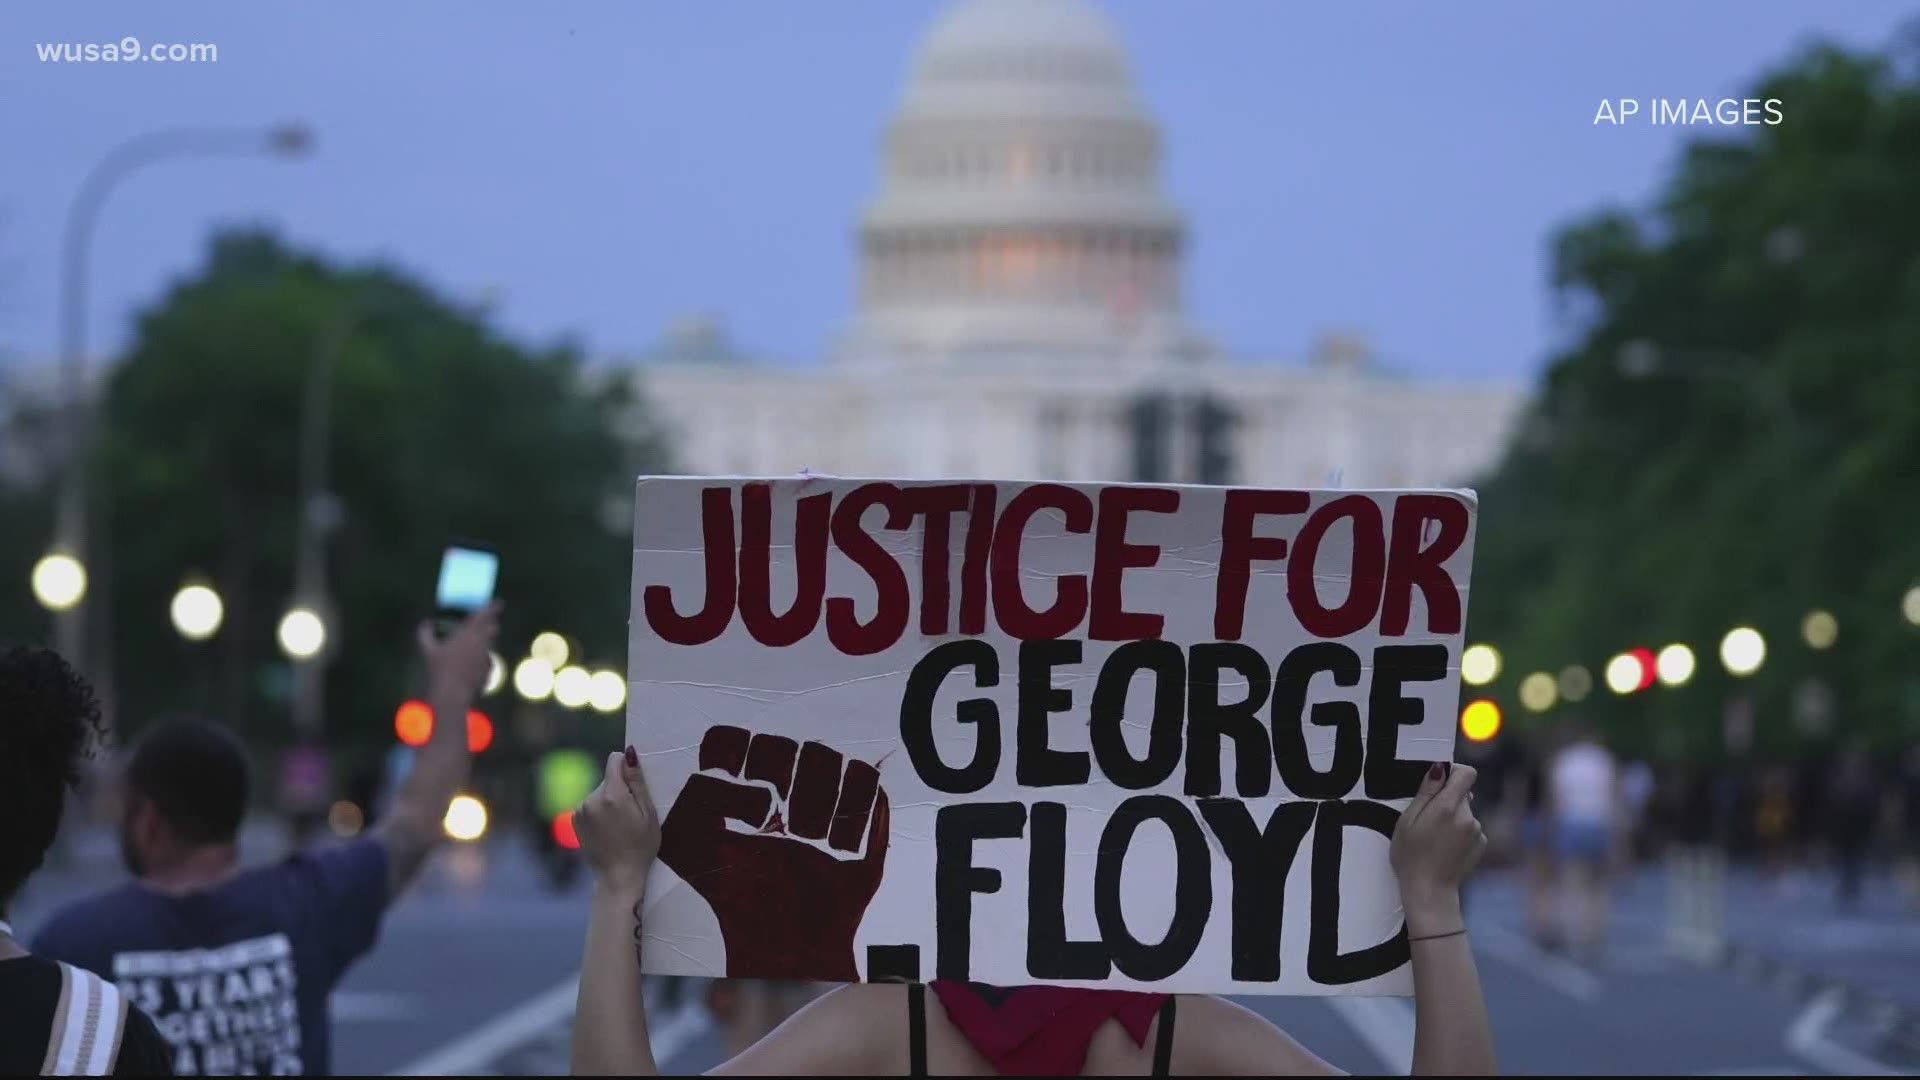 Las protestas se han extendido en Estados Unidos tras el homicidio del afroamericano George Floyd en Minneapolis, Minnesota./ Fotografía: AP. Tomado de wusa9.com.